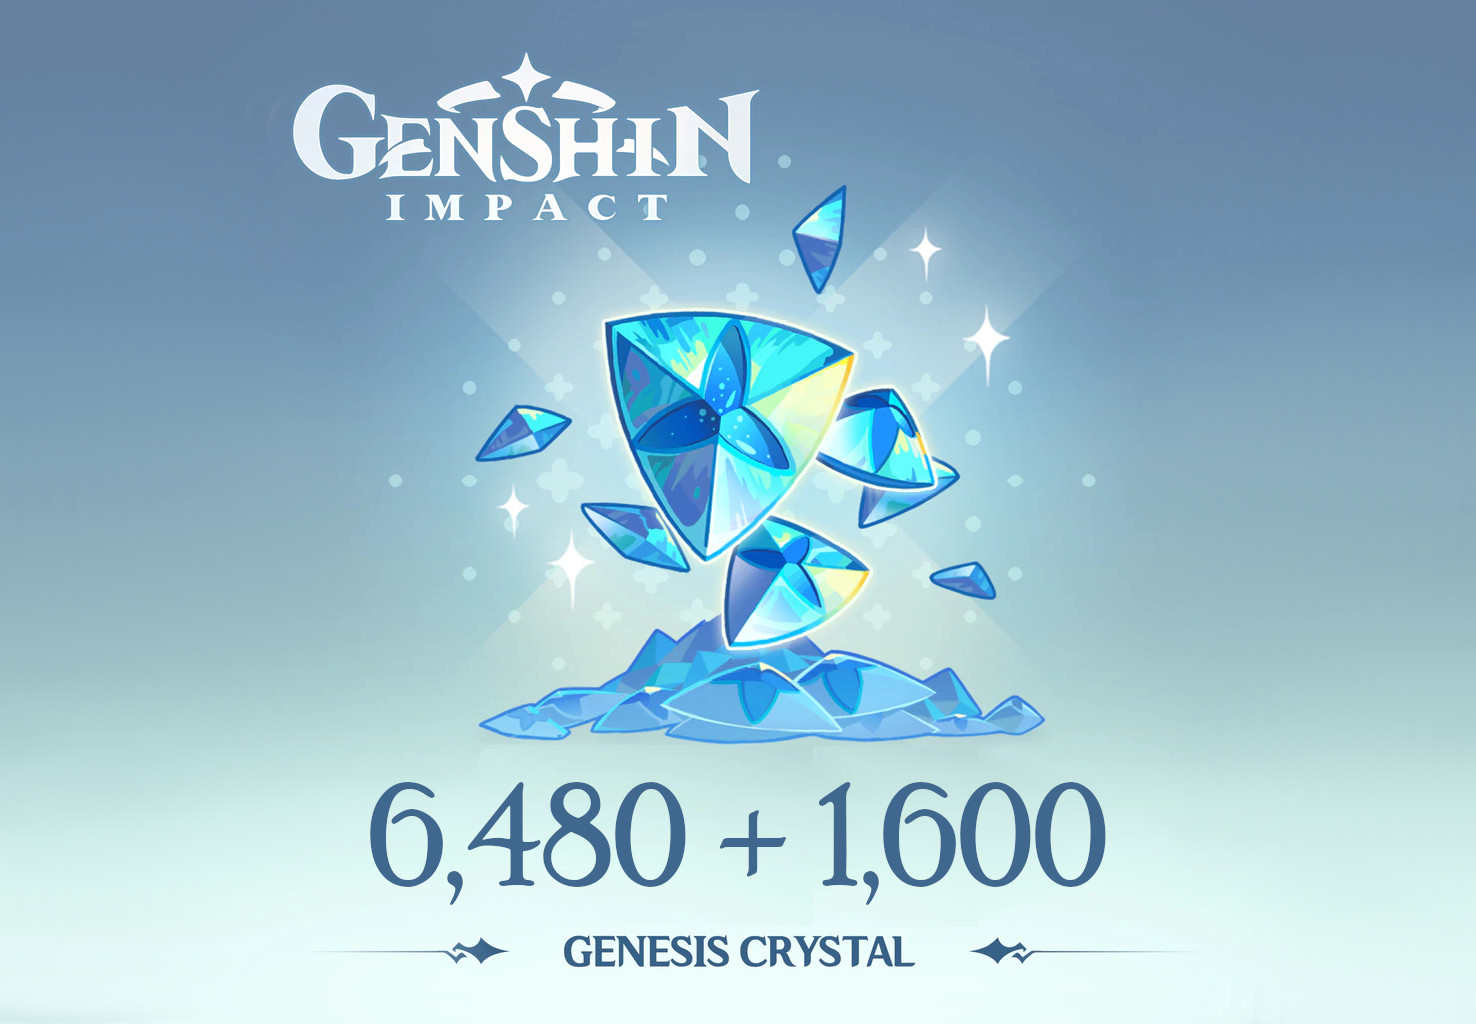 Genshin Impact - 6,480 + 1,600 Genesis Crystals Reidos Voucher 107.29 USD